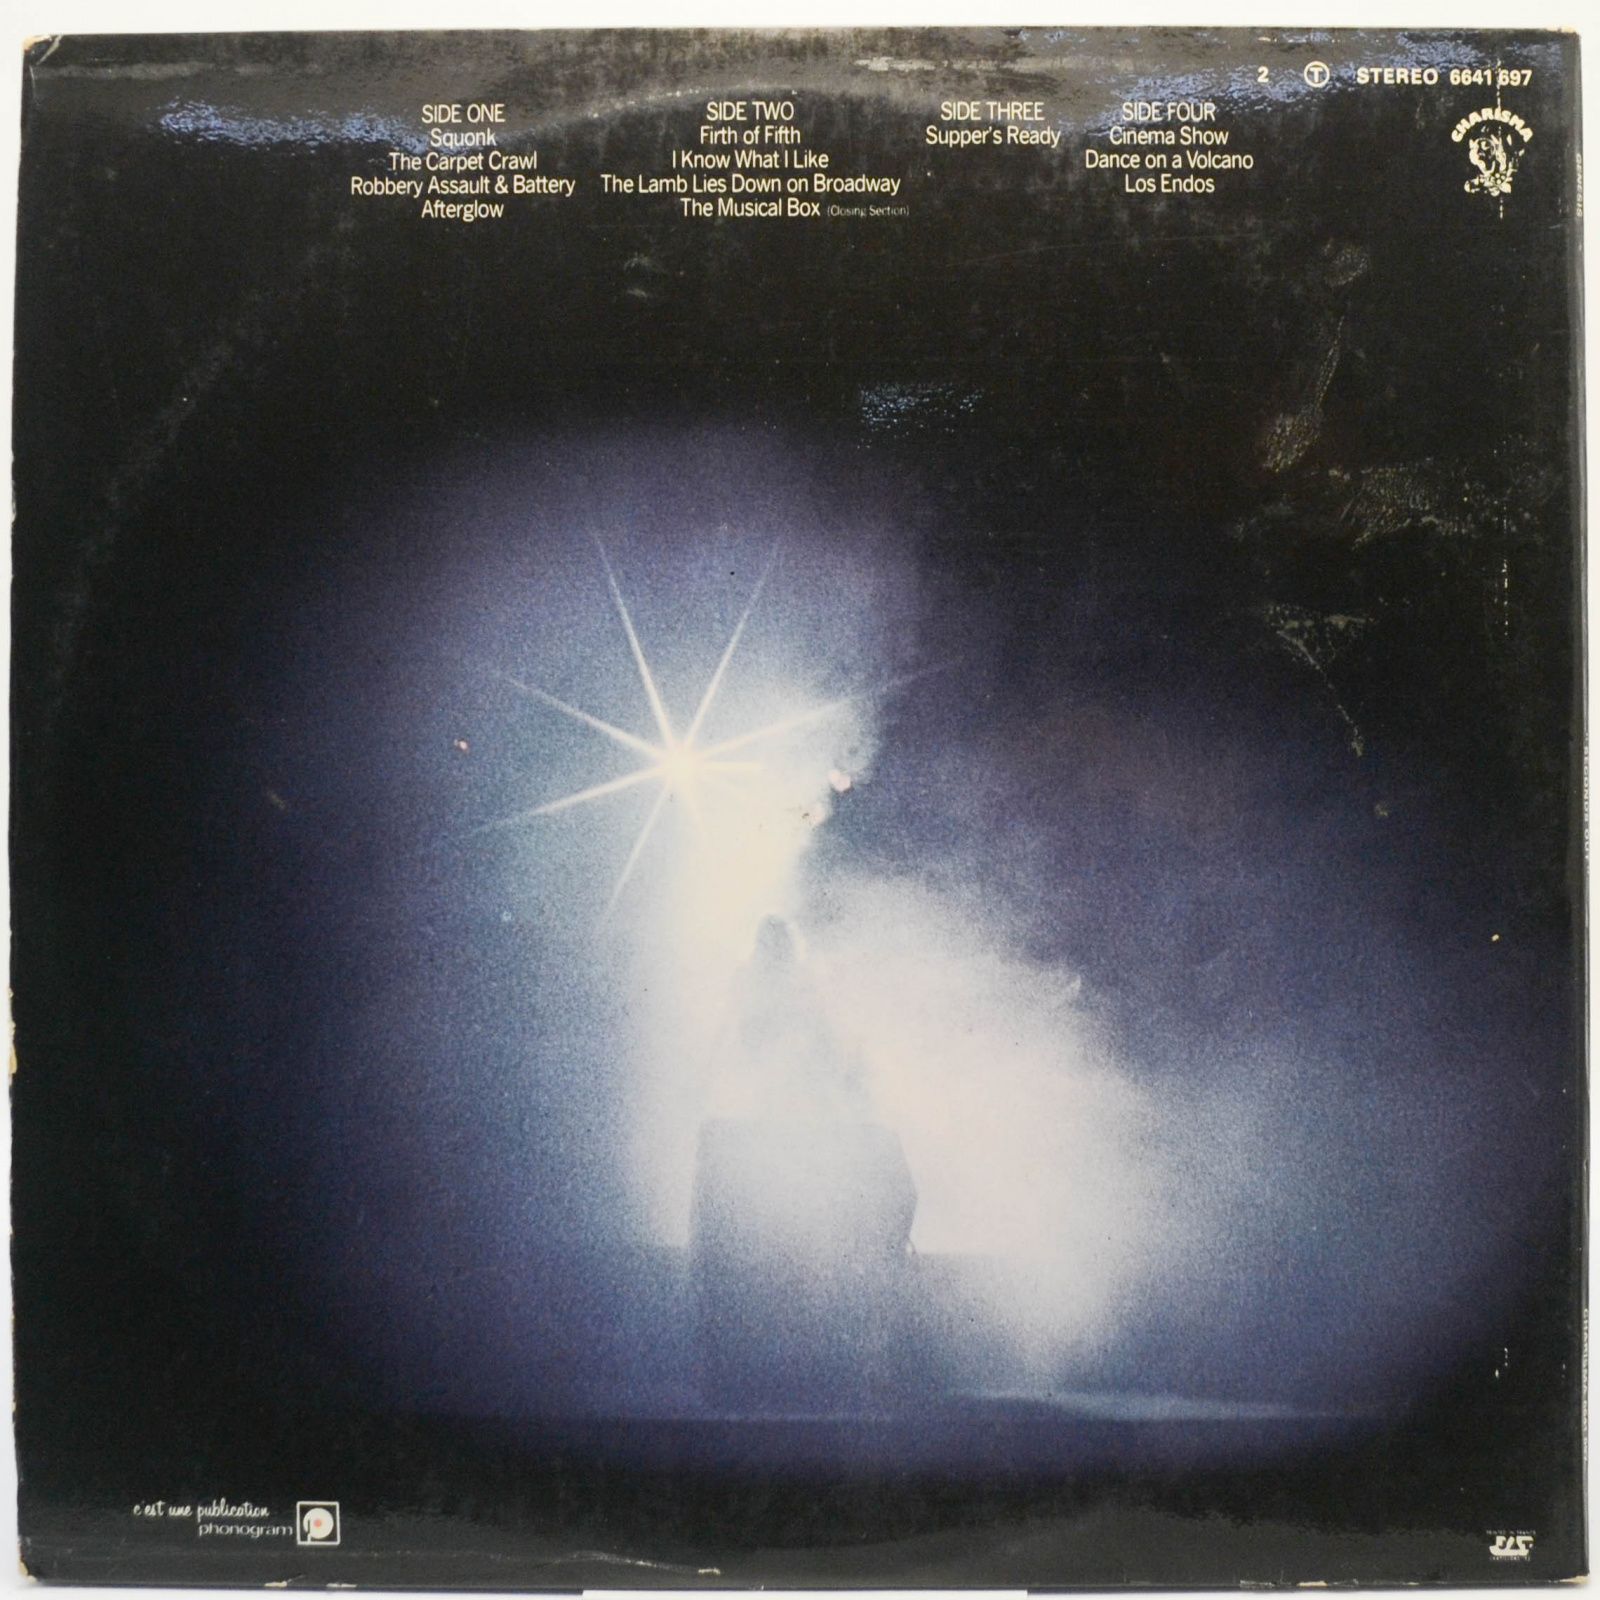 Genesis — Seconds Out (2LP), 1977